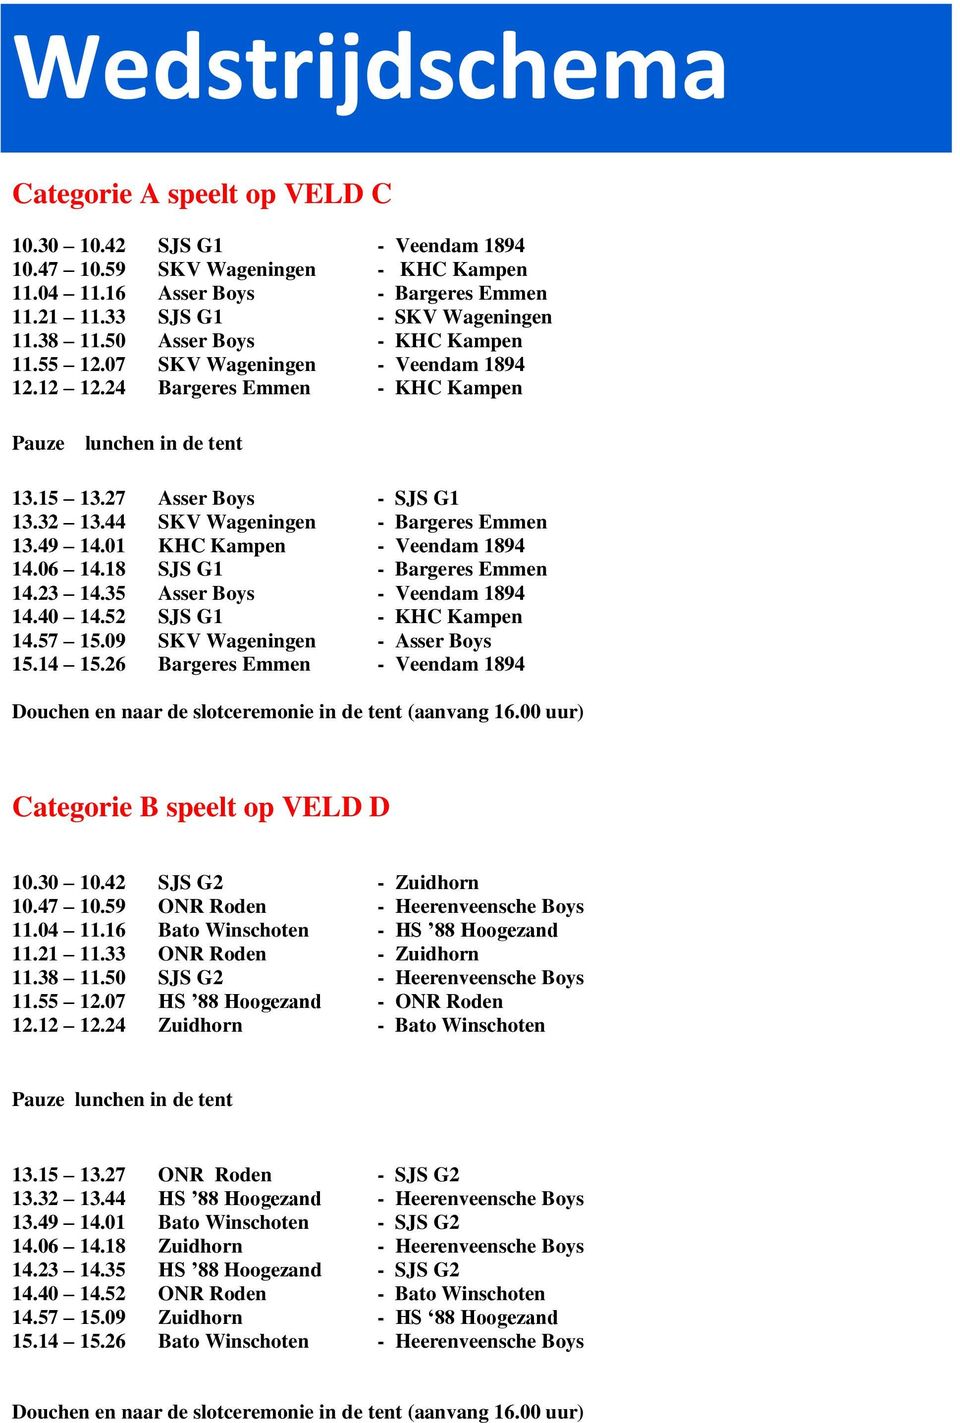 44 SKV Wageningen - Bargeres Emmen 13.49 14.01 KHC Kampen - Veendam 1894 14.06 14.18 SJS G1 - Bargeres Emmen 14.23 14.35 Asser Boys - Veendam 1894 14.40 14.52 SJS G1 - KHC Kampen 14.57 15.